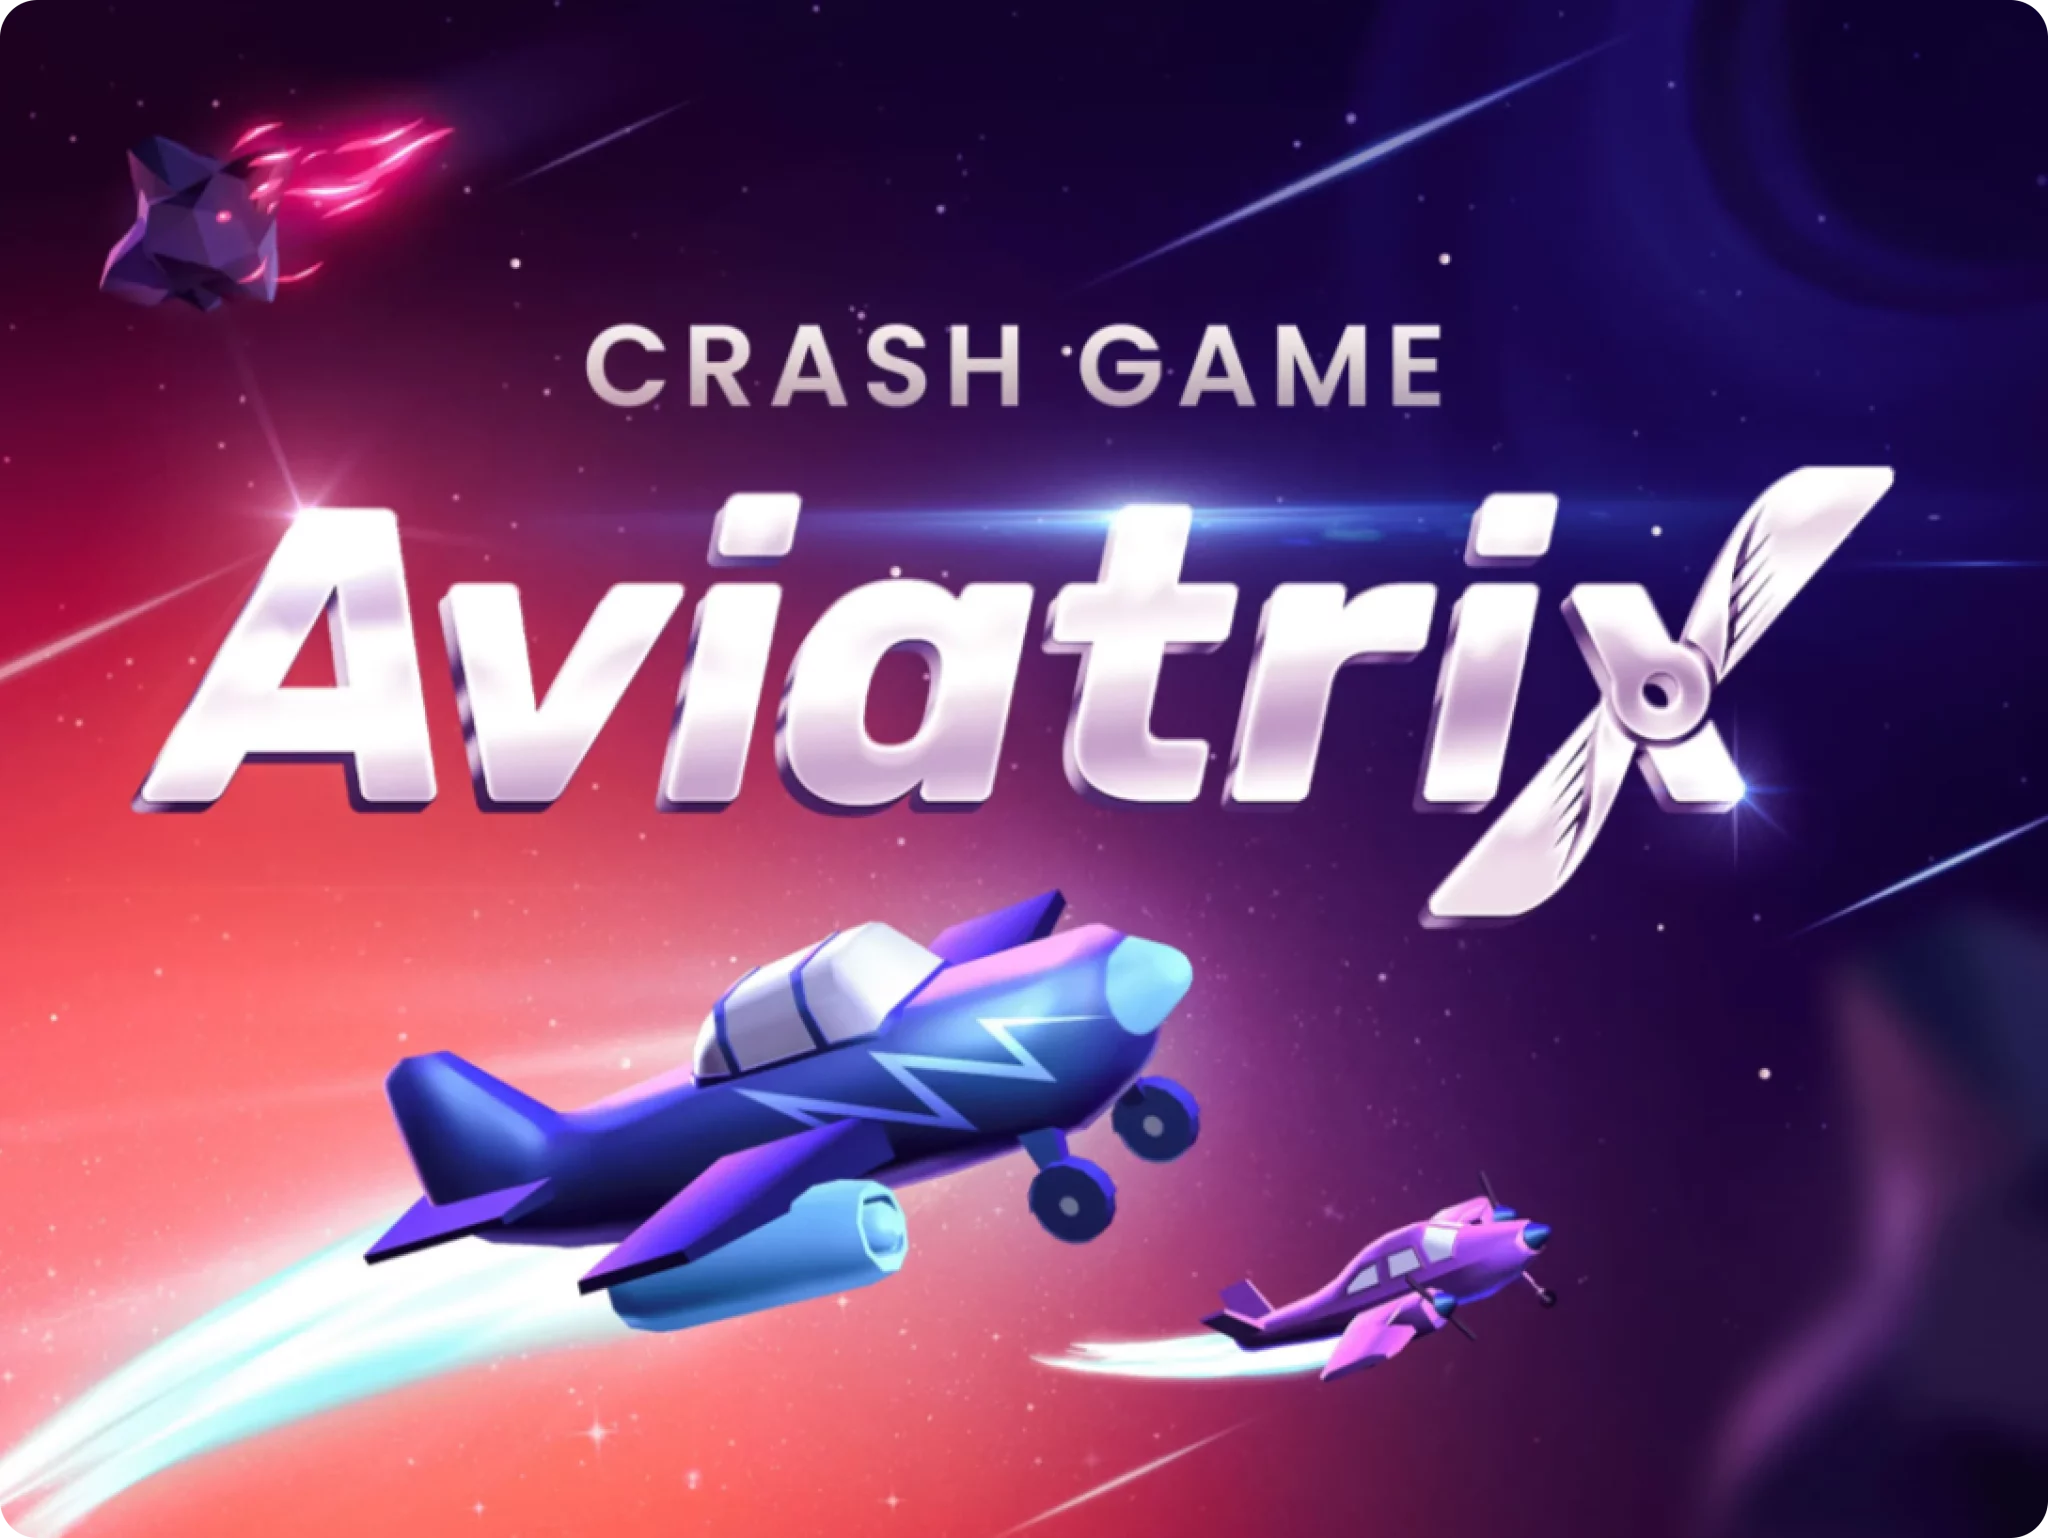 Aviator игра t me aviatrix site. Авиатрикс. Aviatrix game. Aviatrix Slot. Aviatrix ставки.